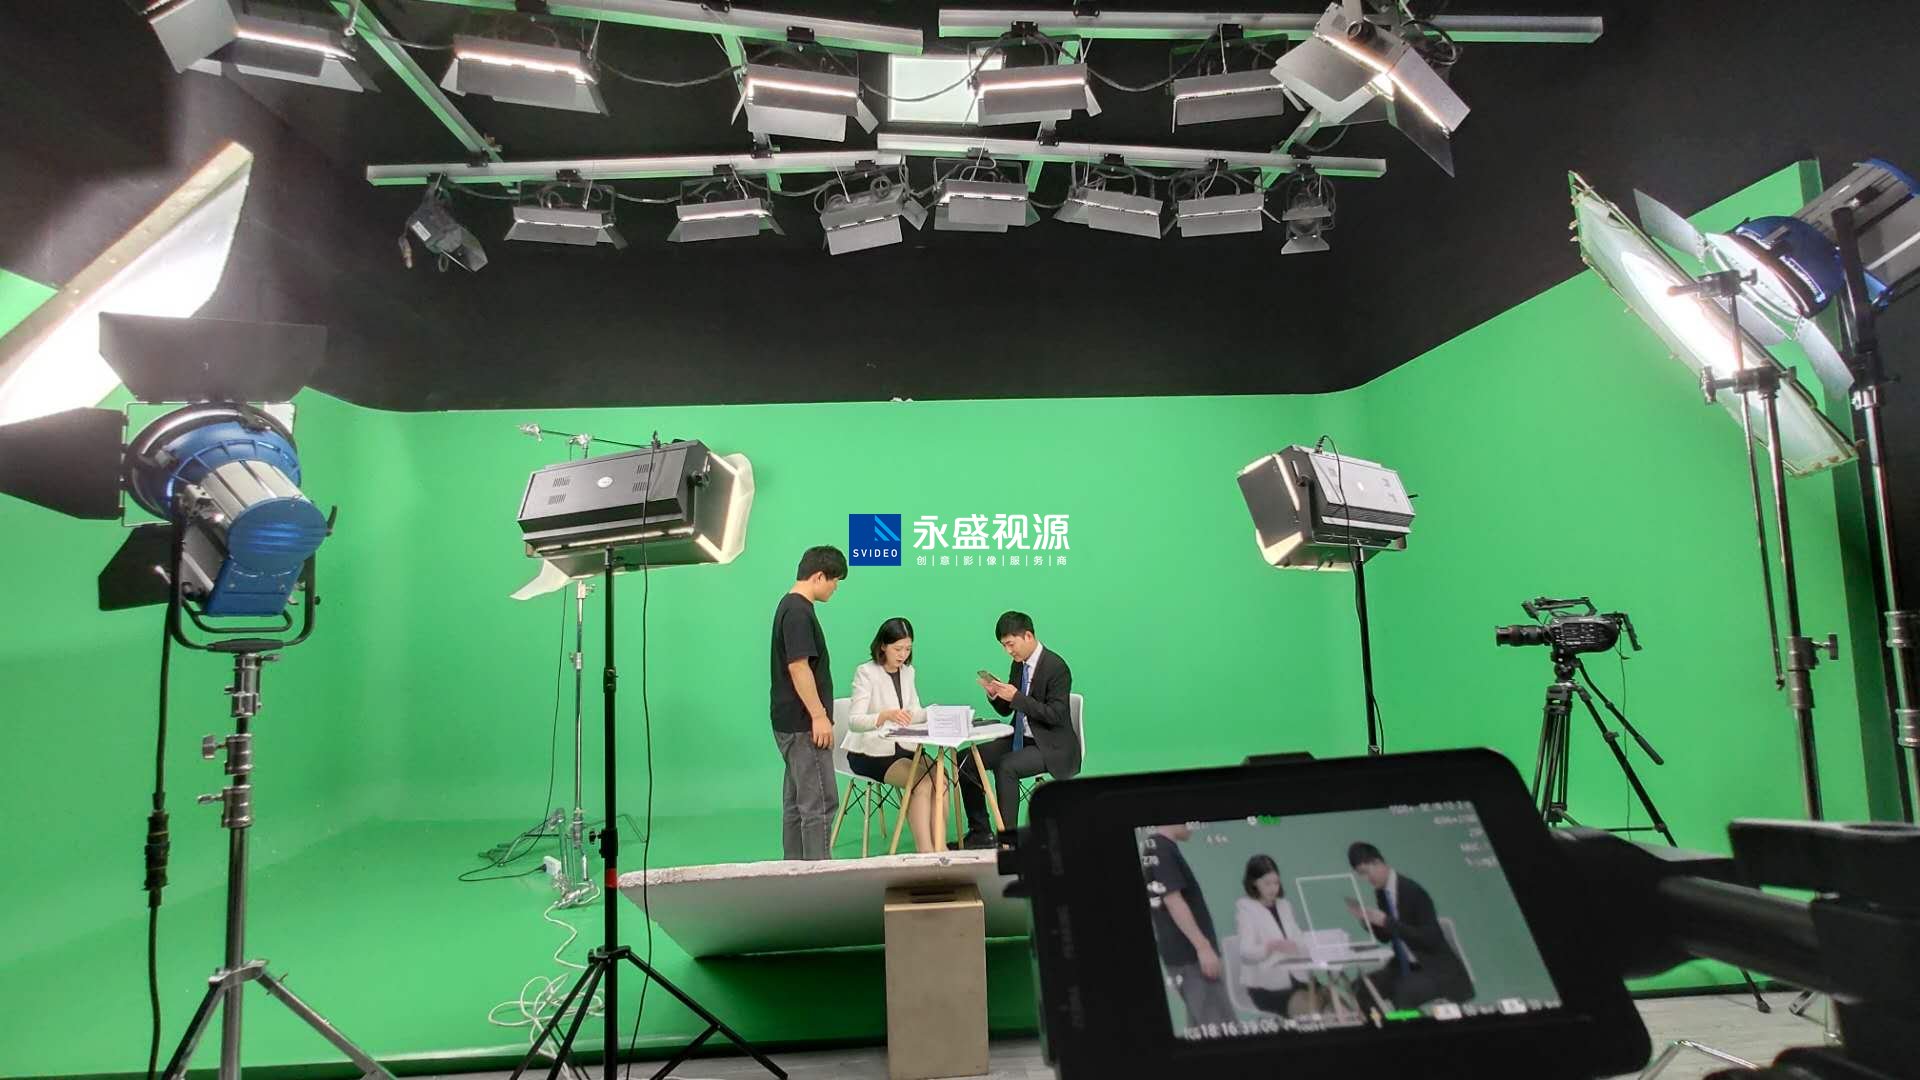 中国人保企业宣传片现场拍摄花絮镜头